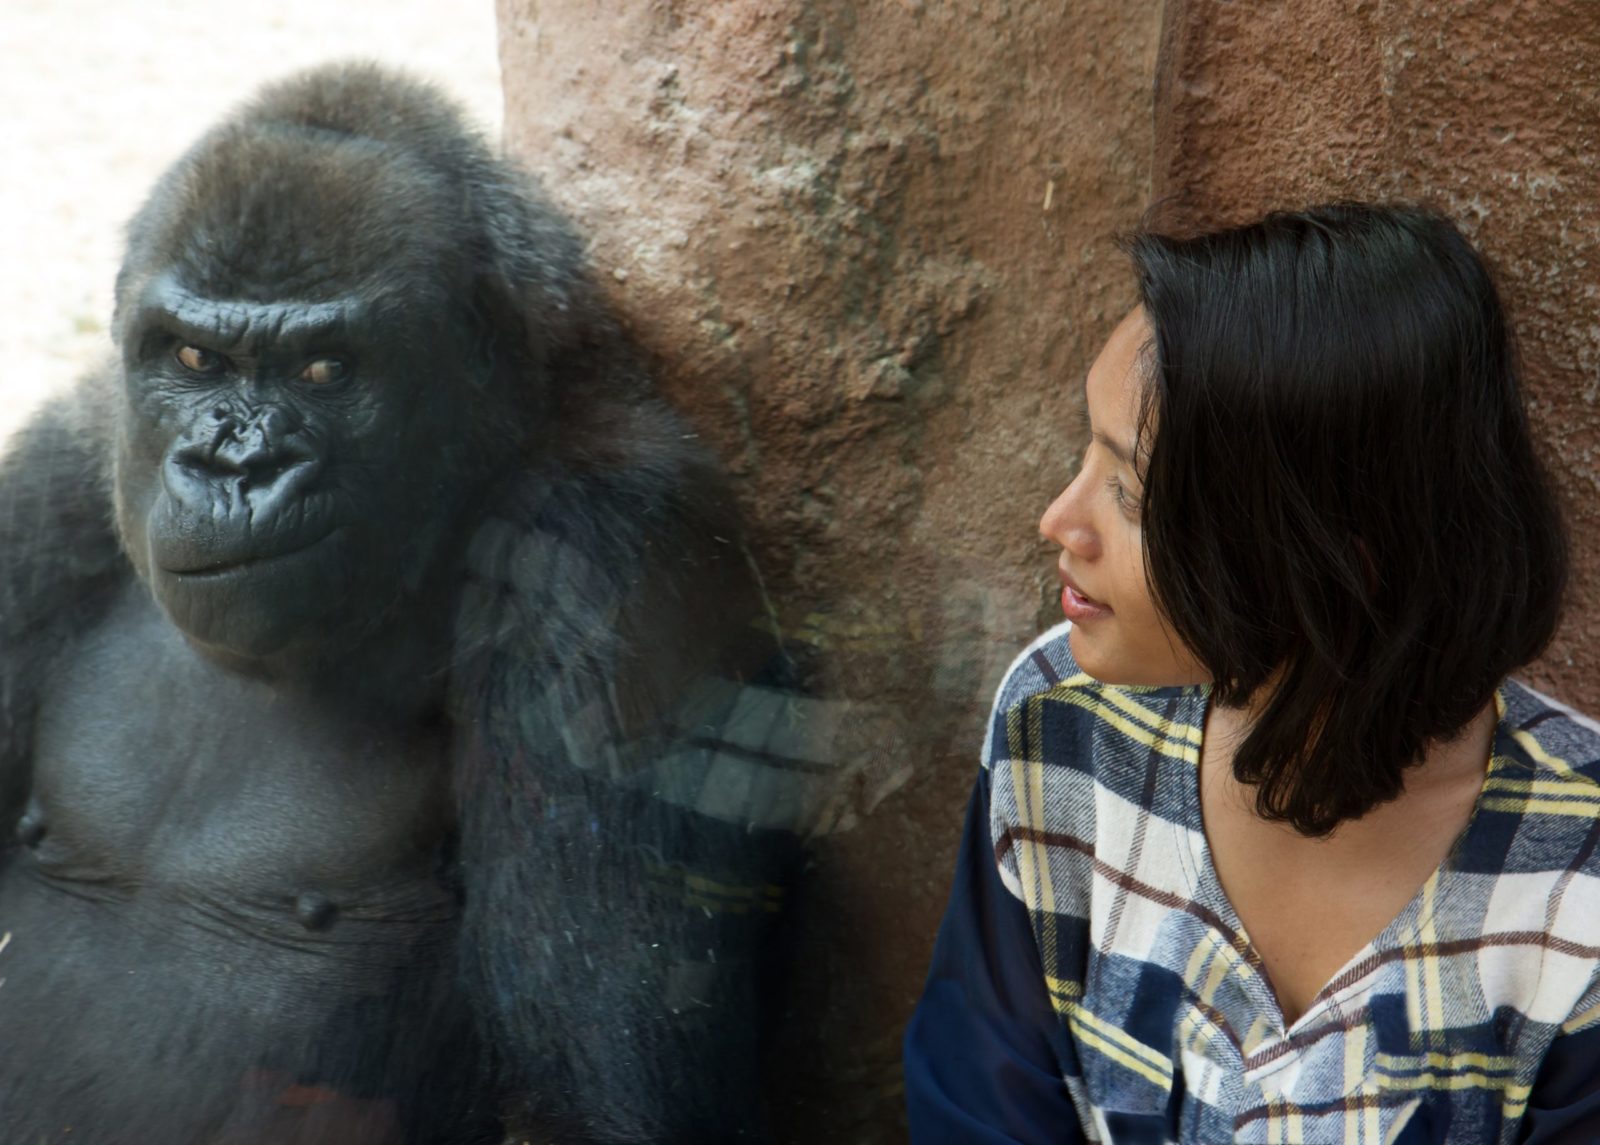 Gorilla and human at zoo